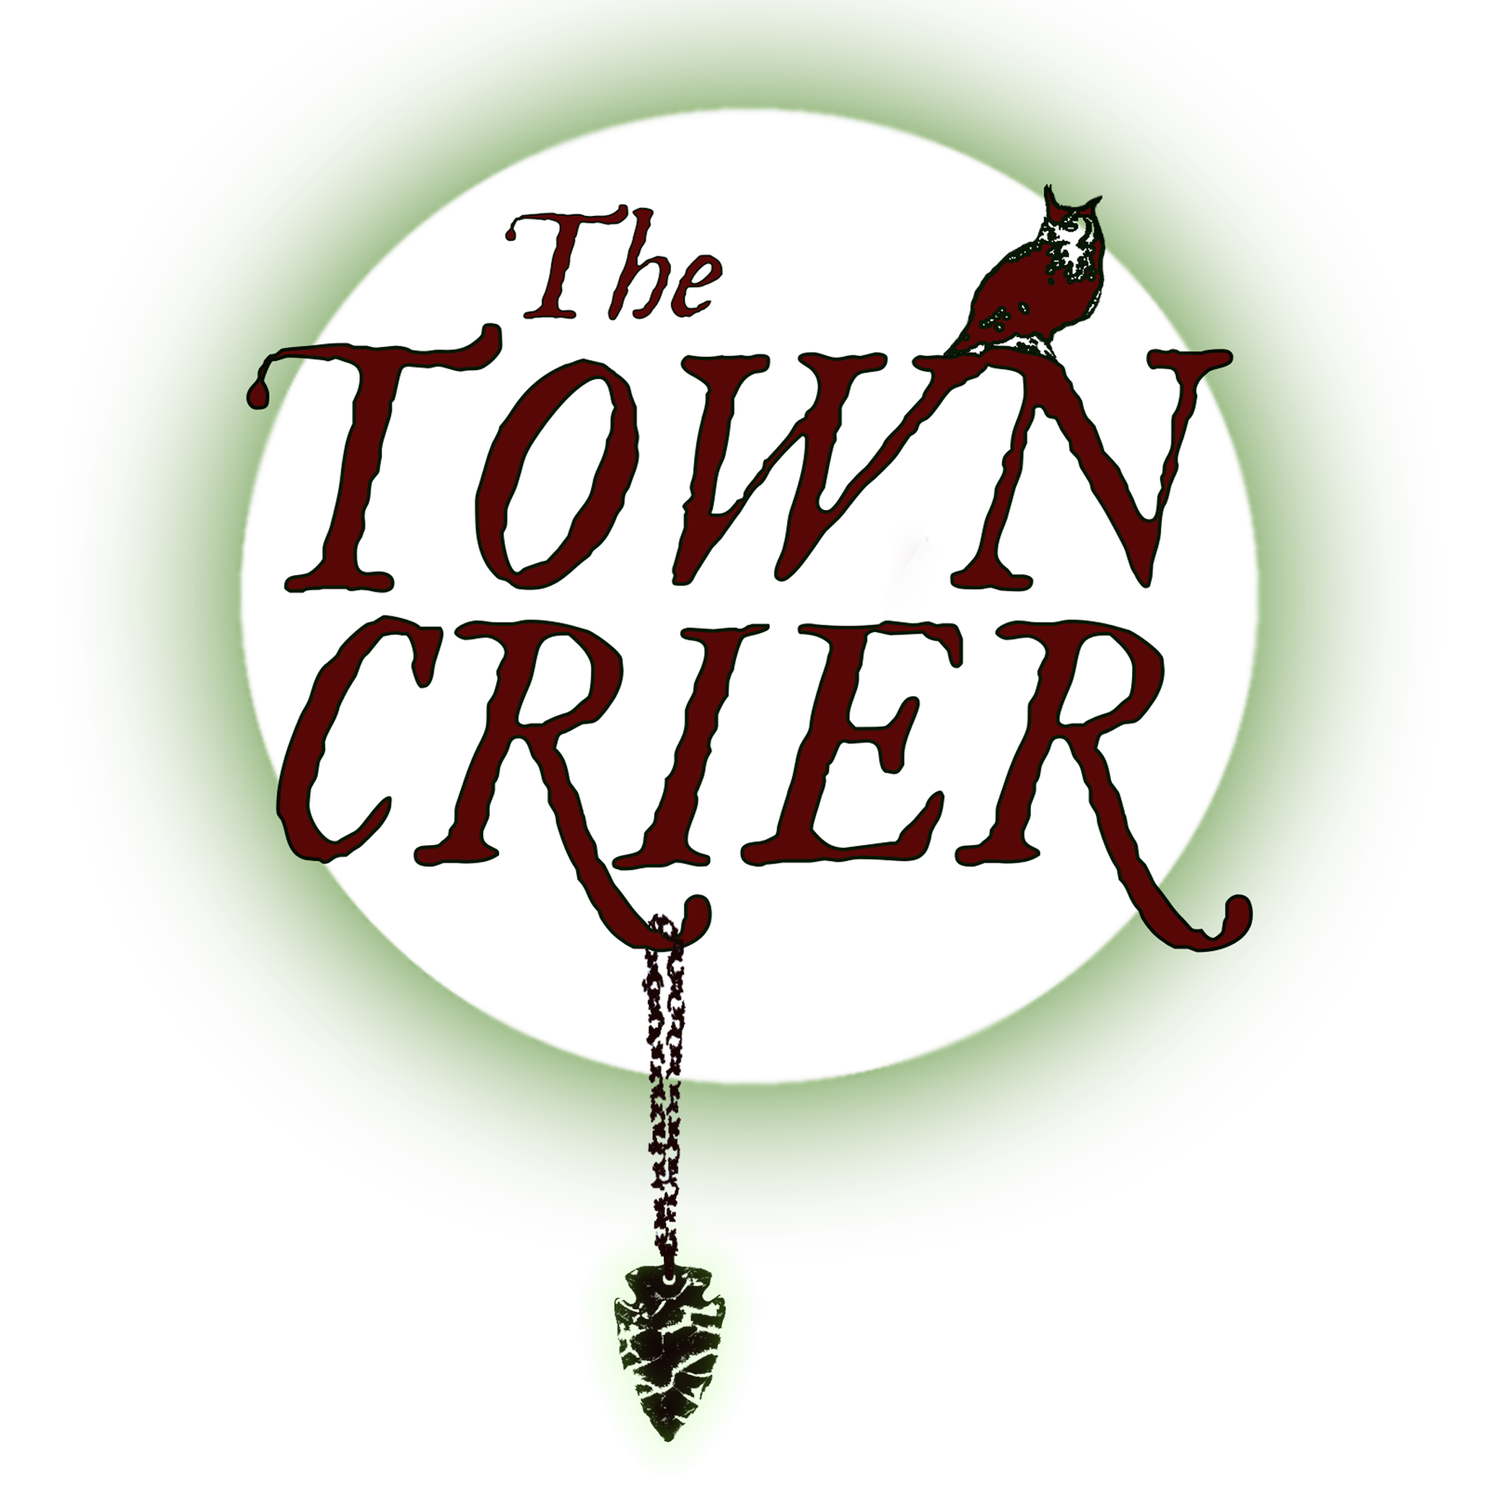 THE TOWN CRIER